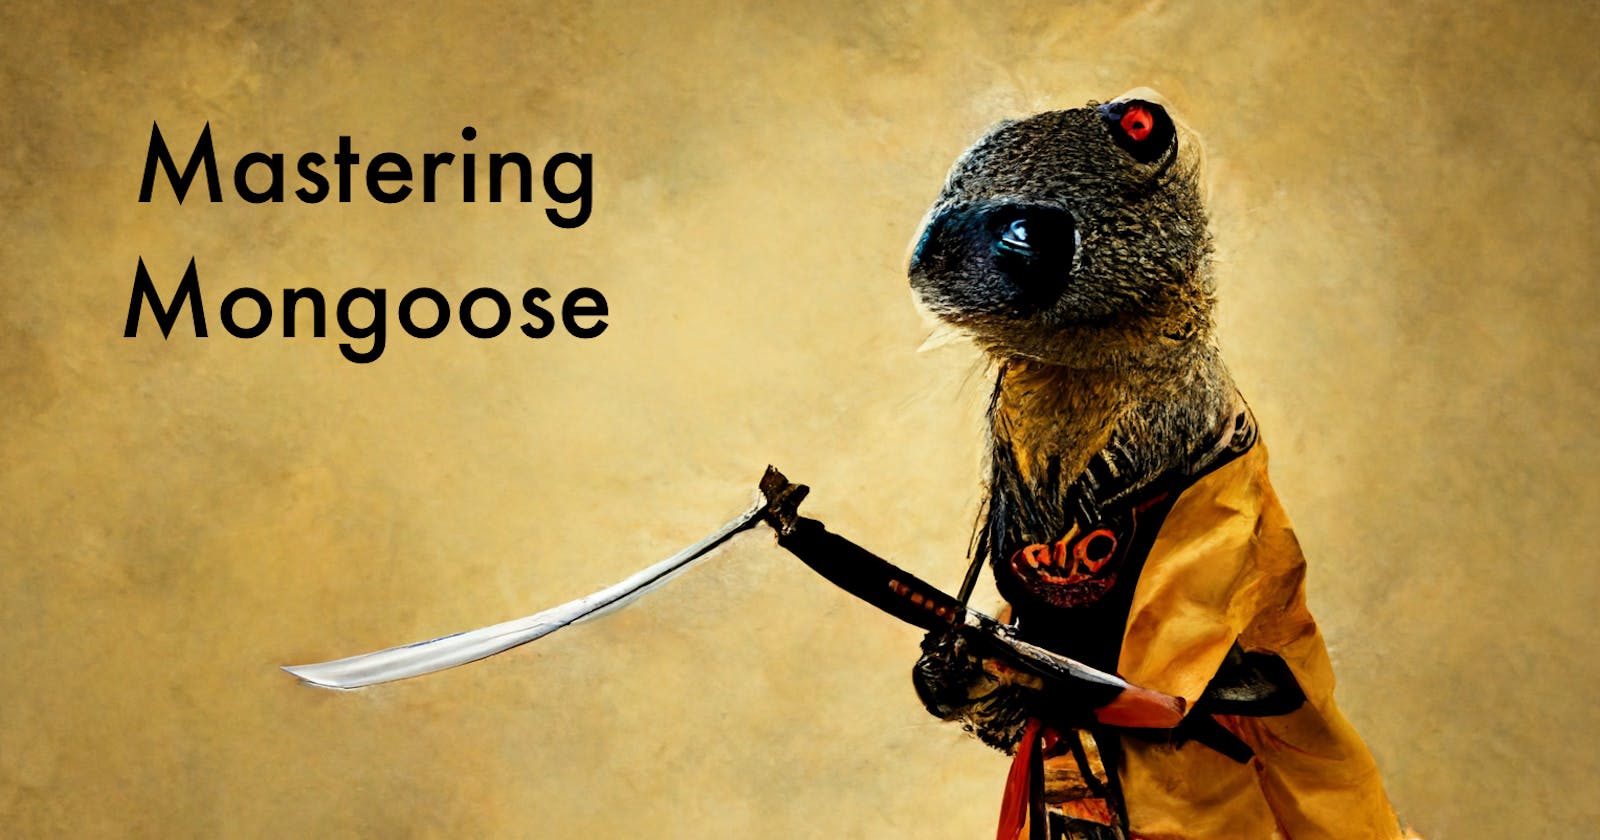 Mastering Mongoose